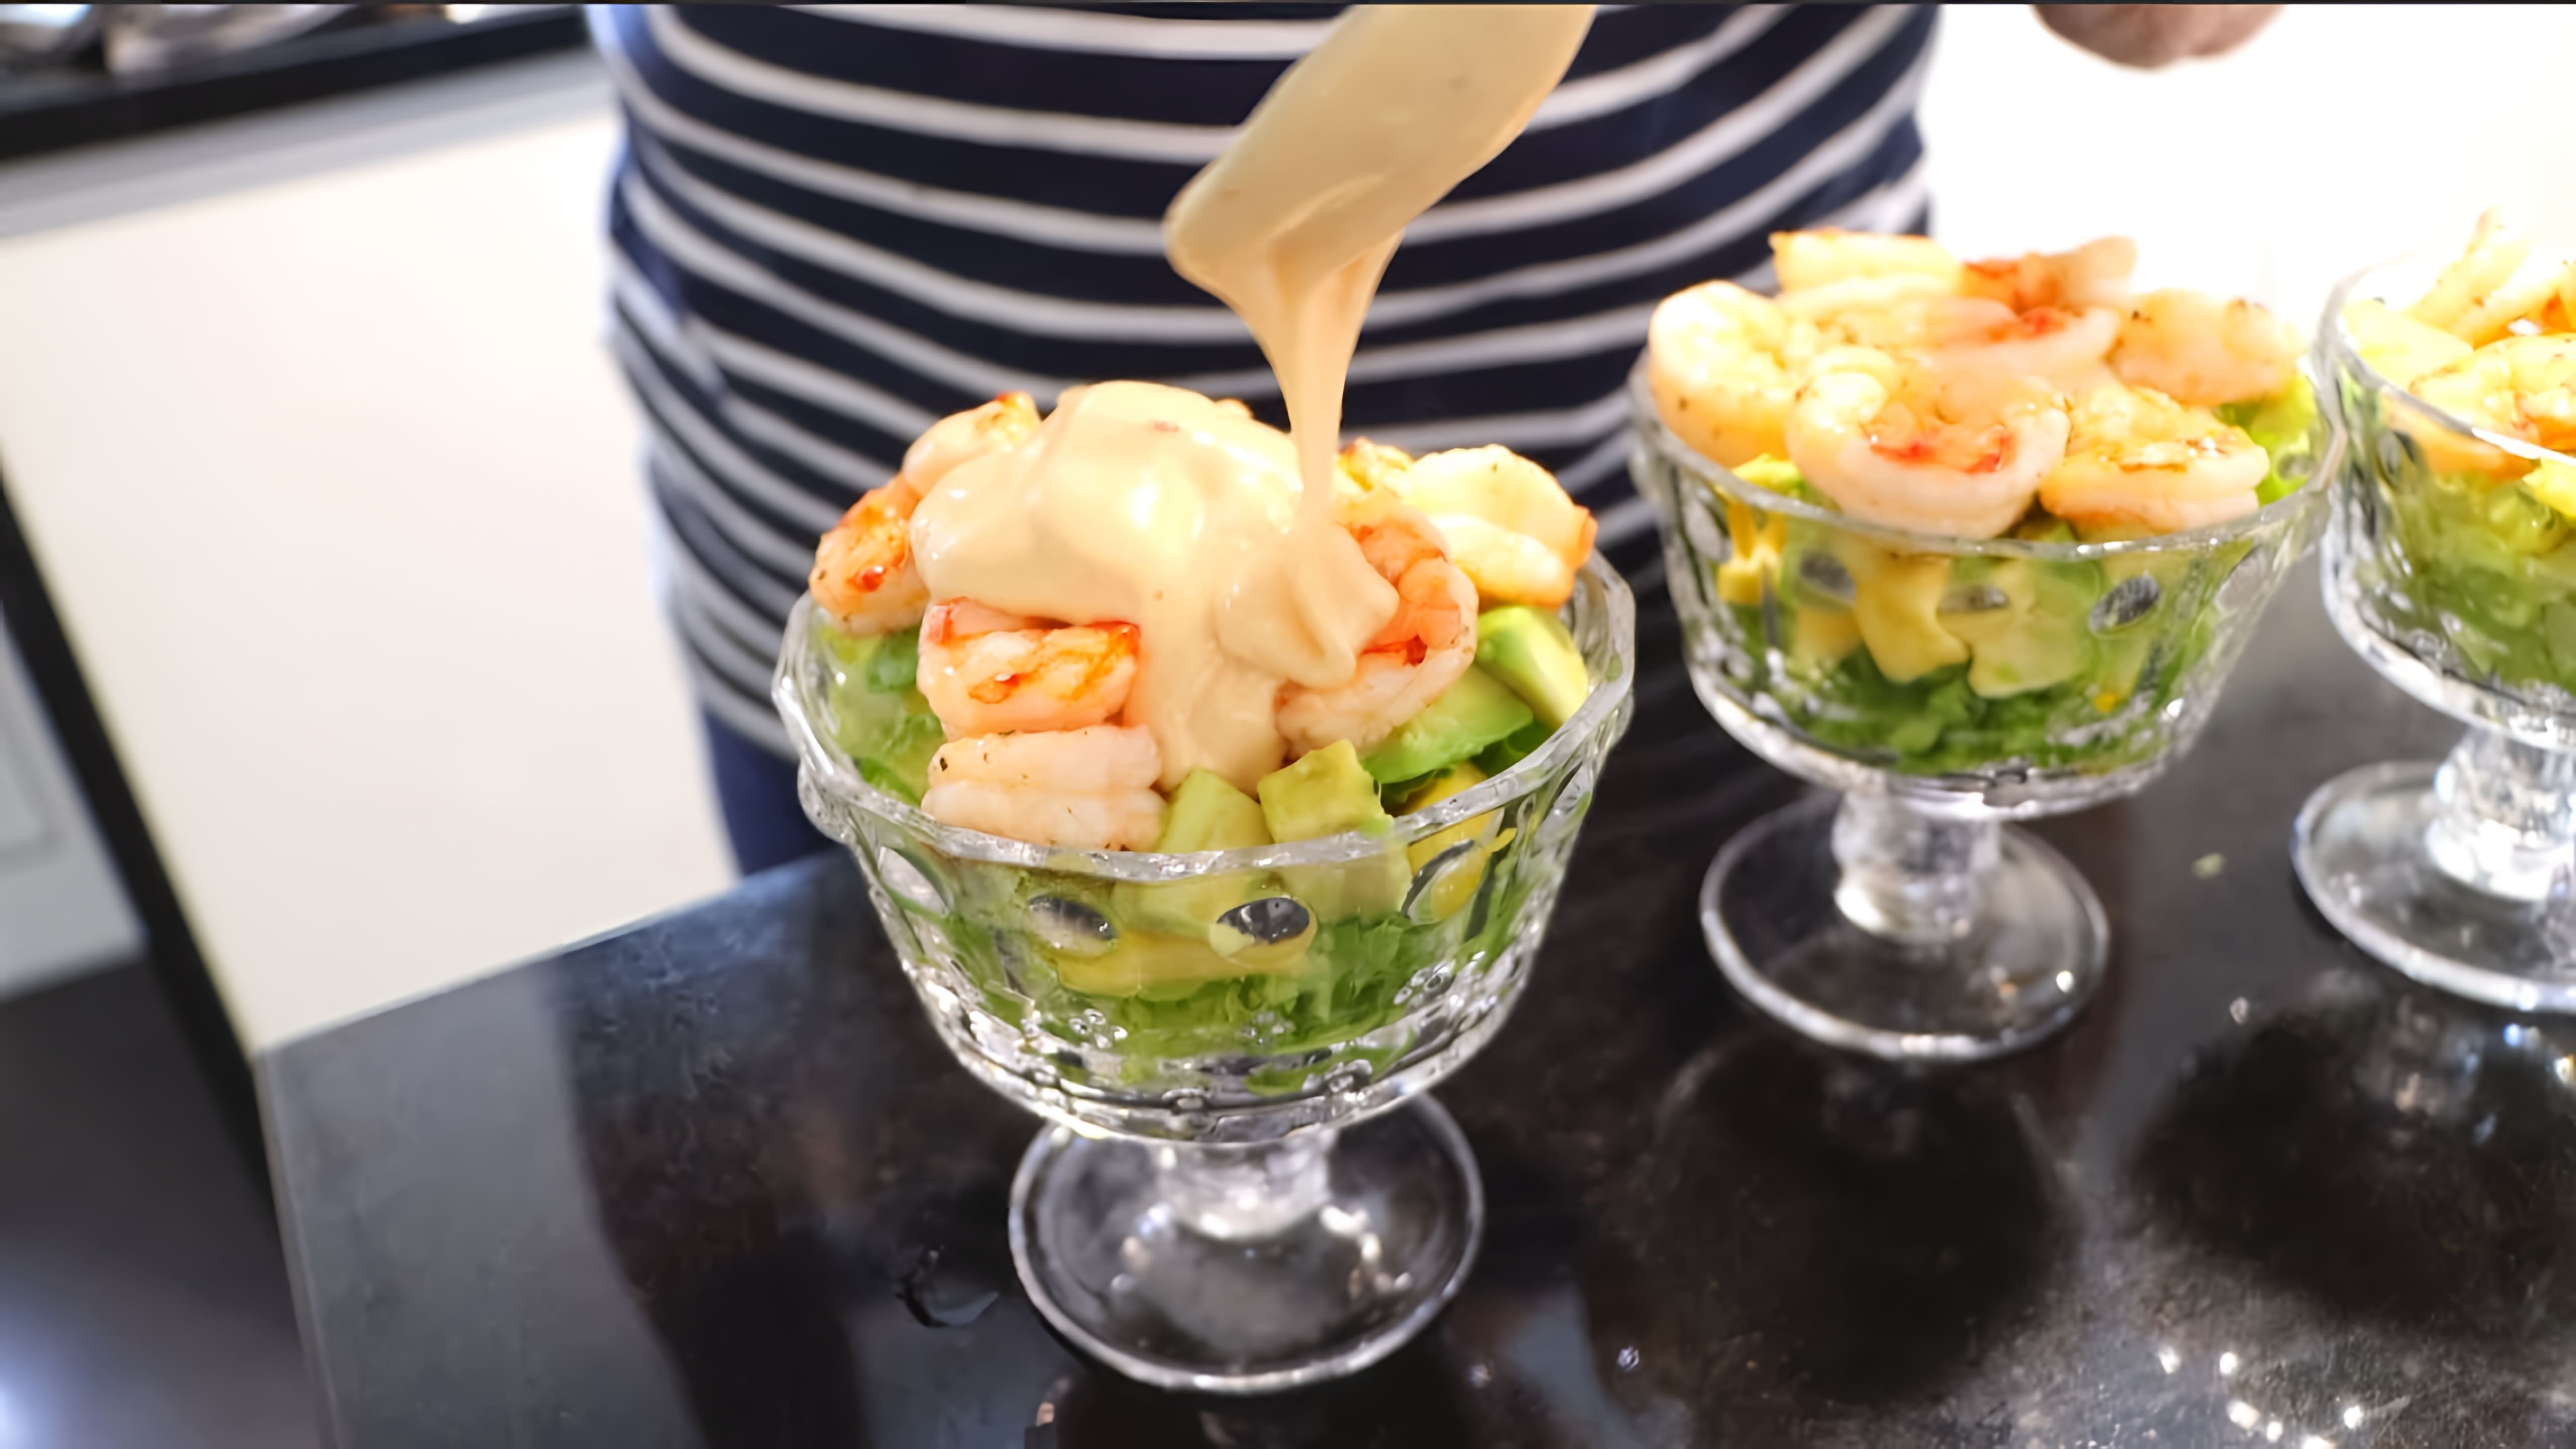 В этом видео испанская свекровь готовит салат с креветками и авокадо, который в Испании также называют "коктейль с креветками"